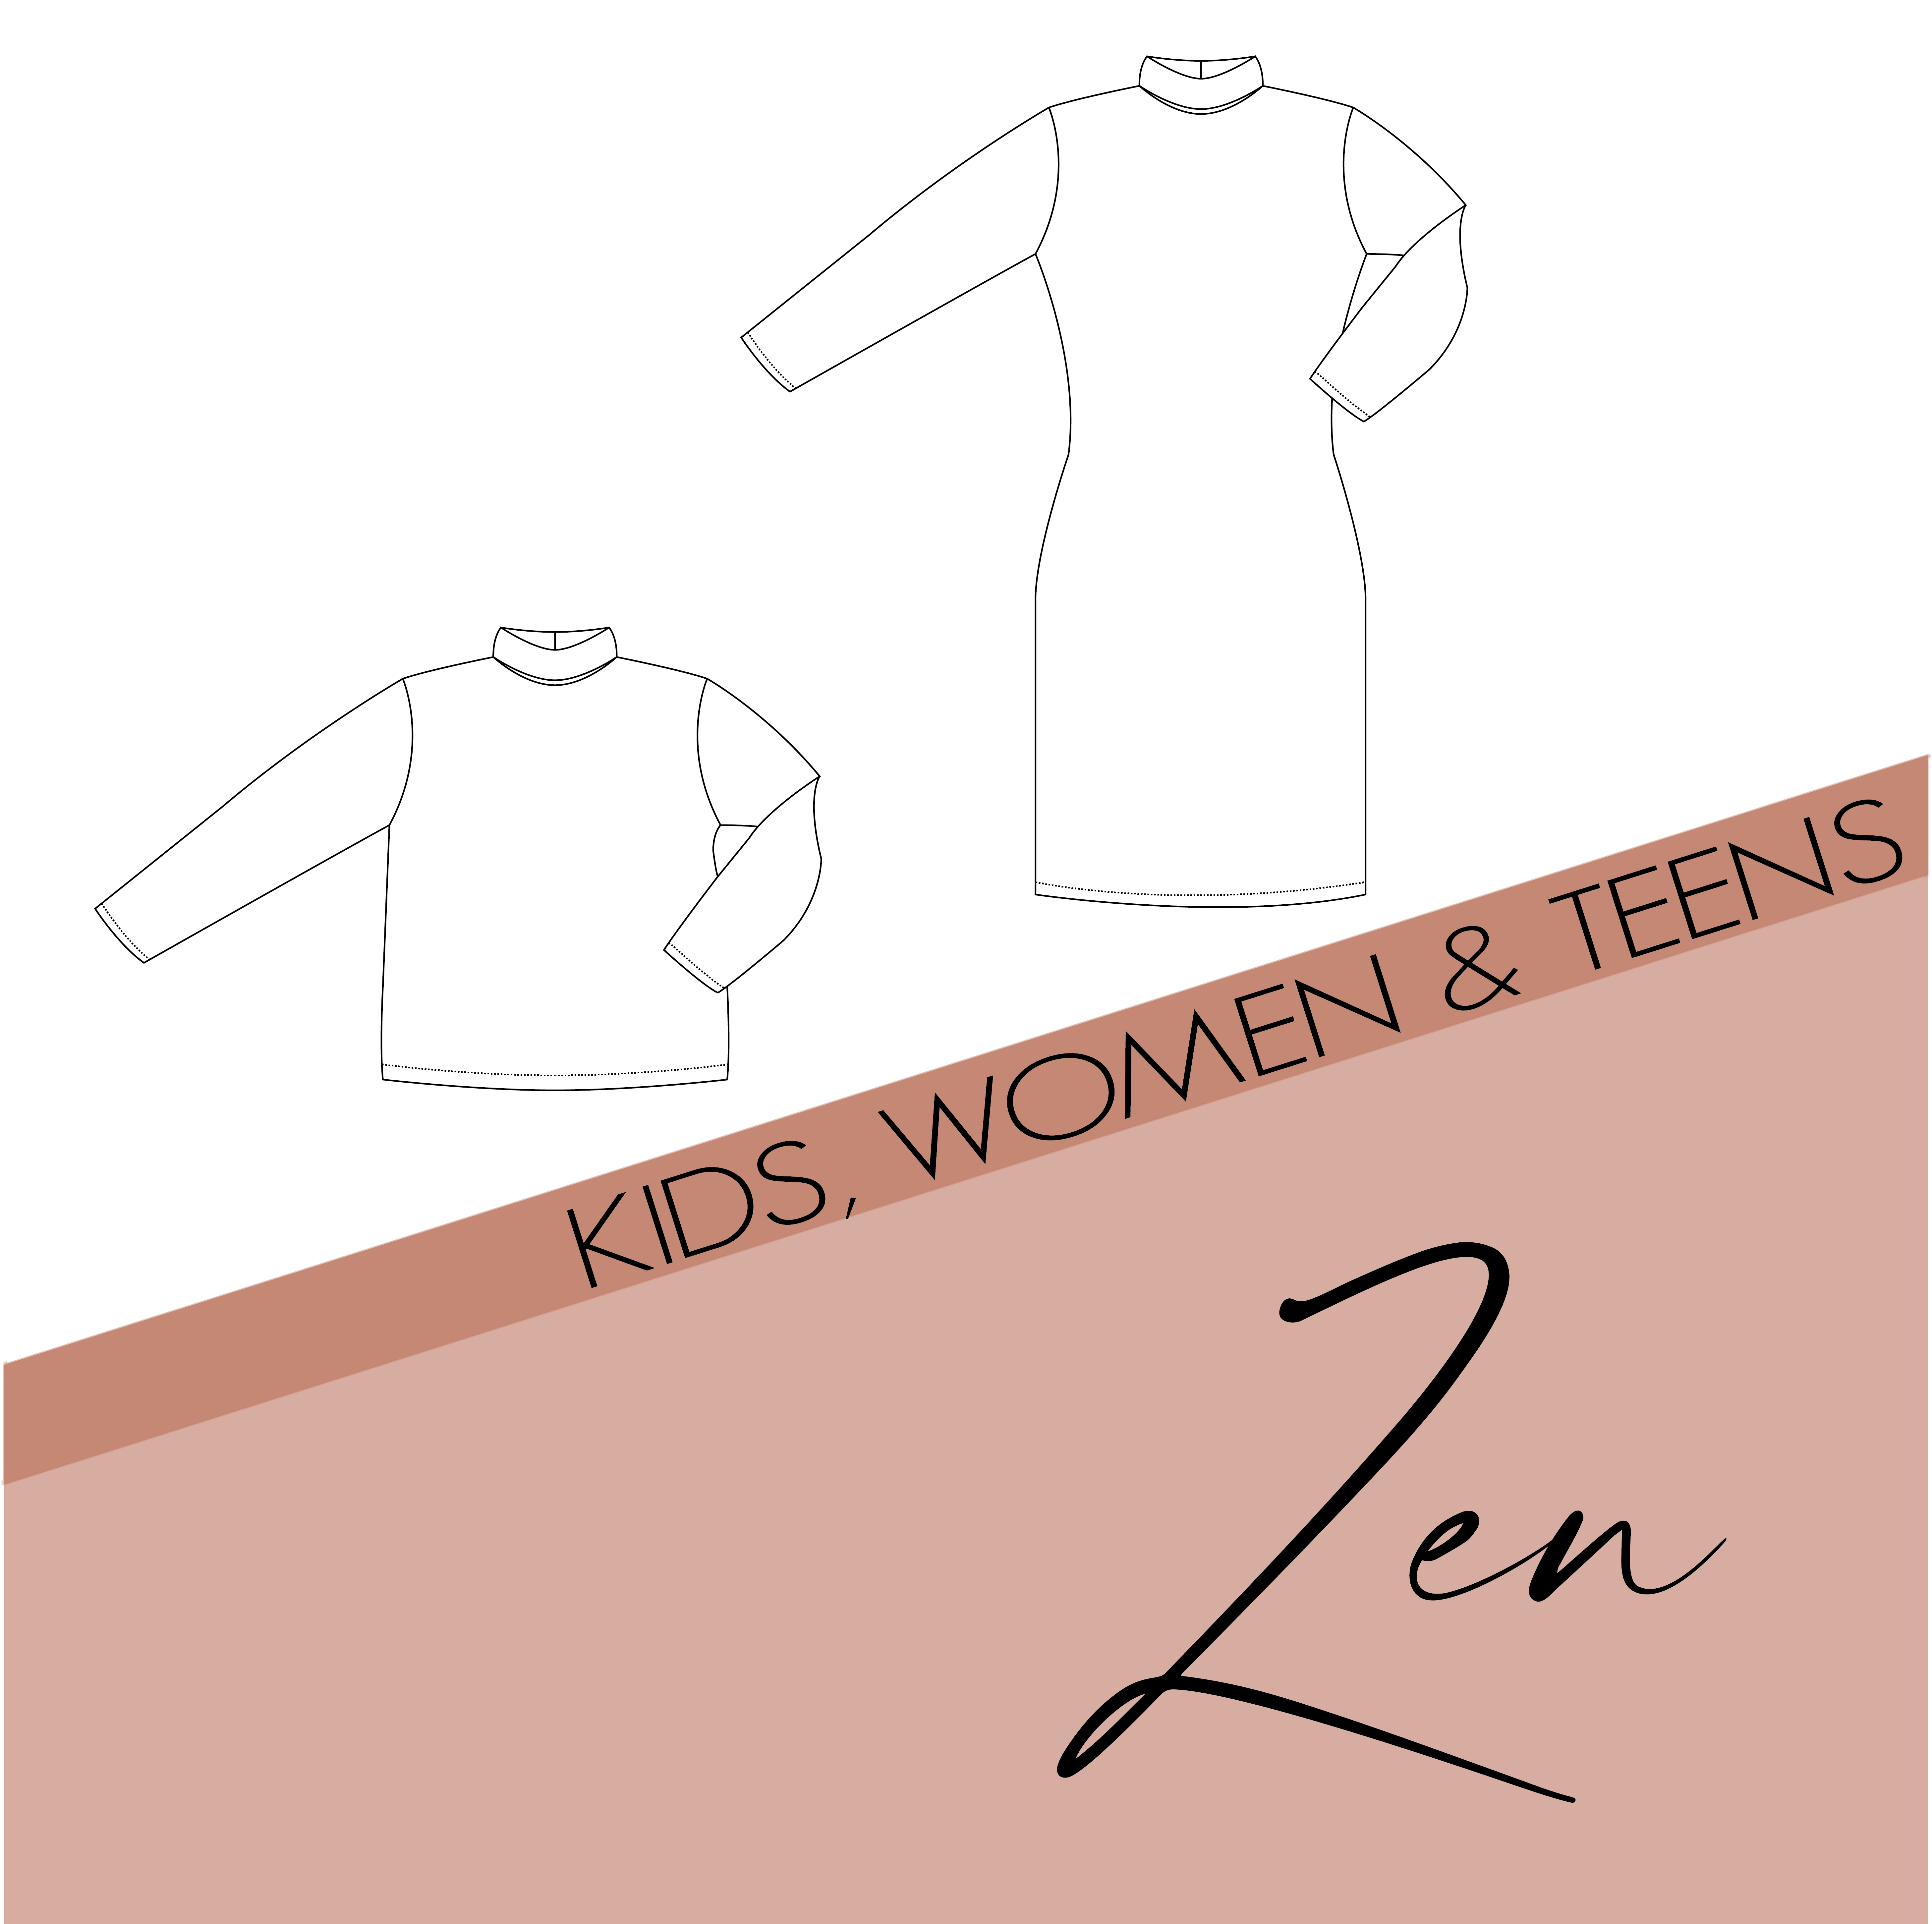 Zen - kids, women & teens